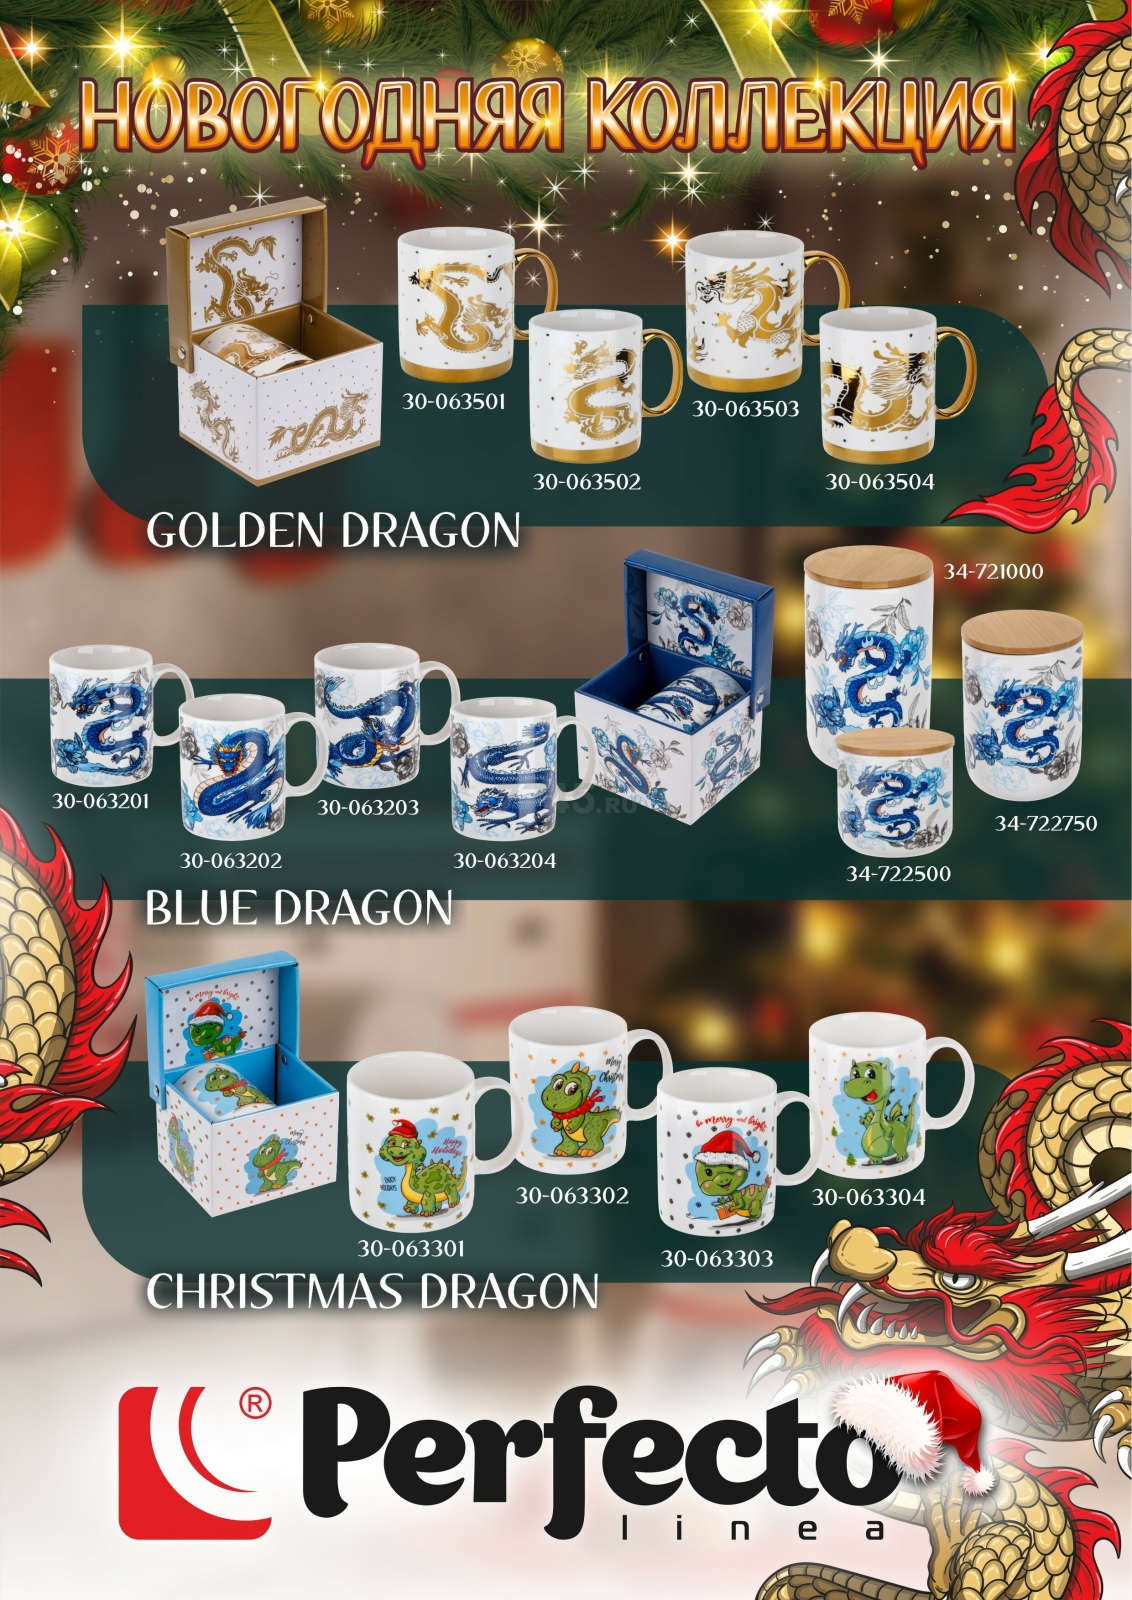 Кружка керамическая PERFECTO LINEA Christmas Dragon-4 360 мл (30-063304) - Фото 4